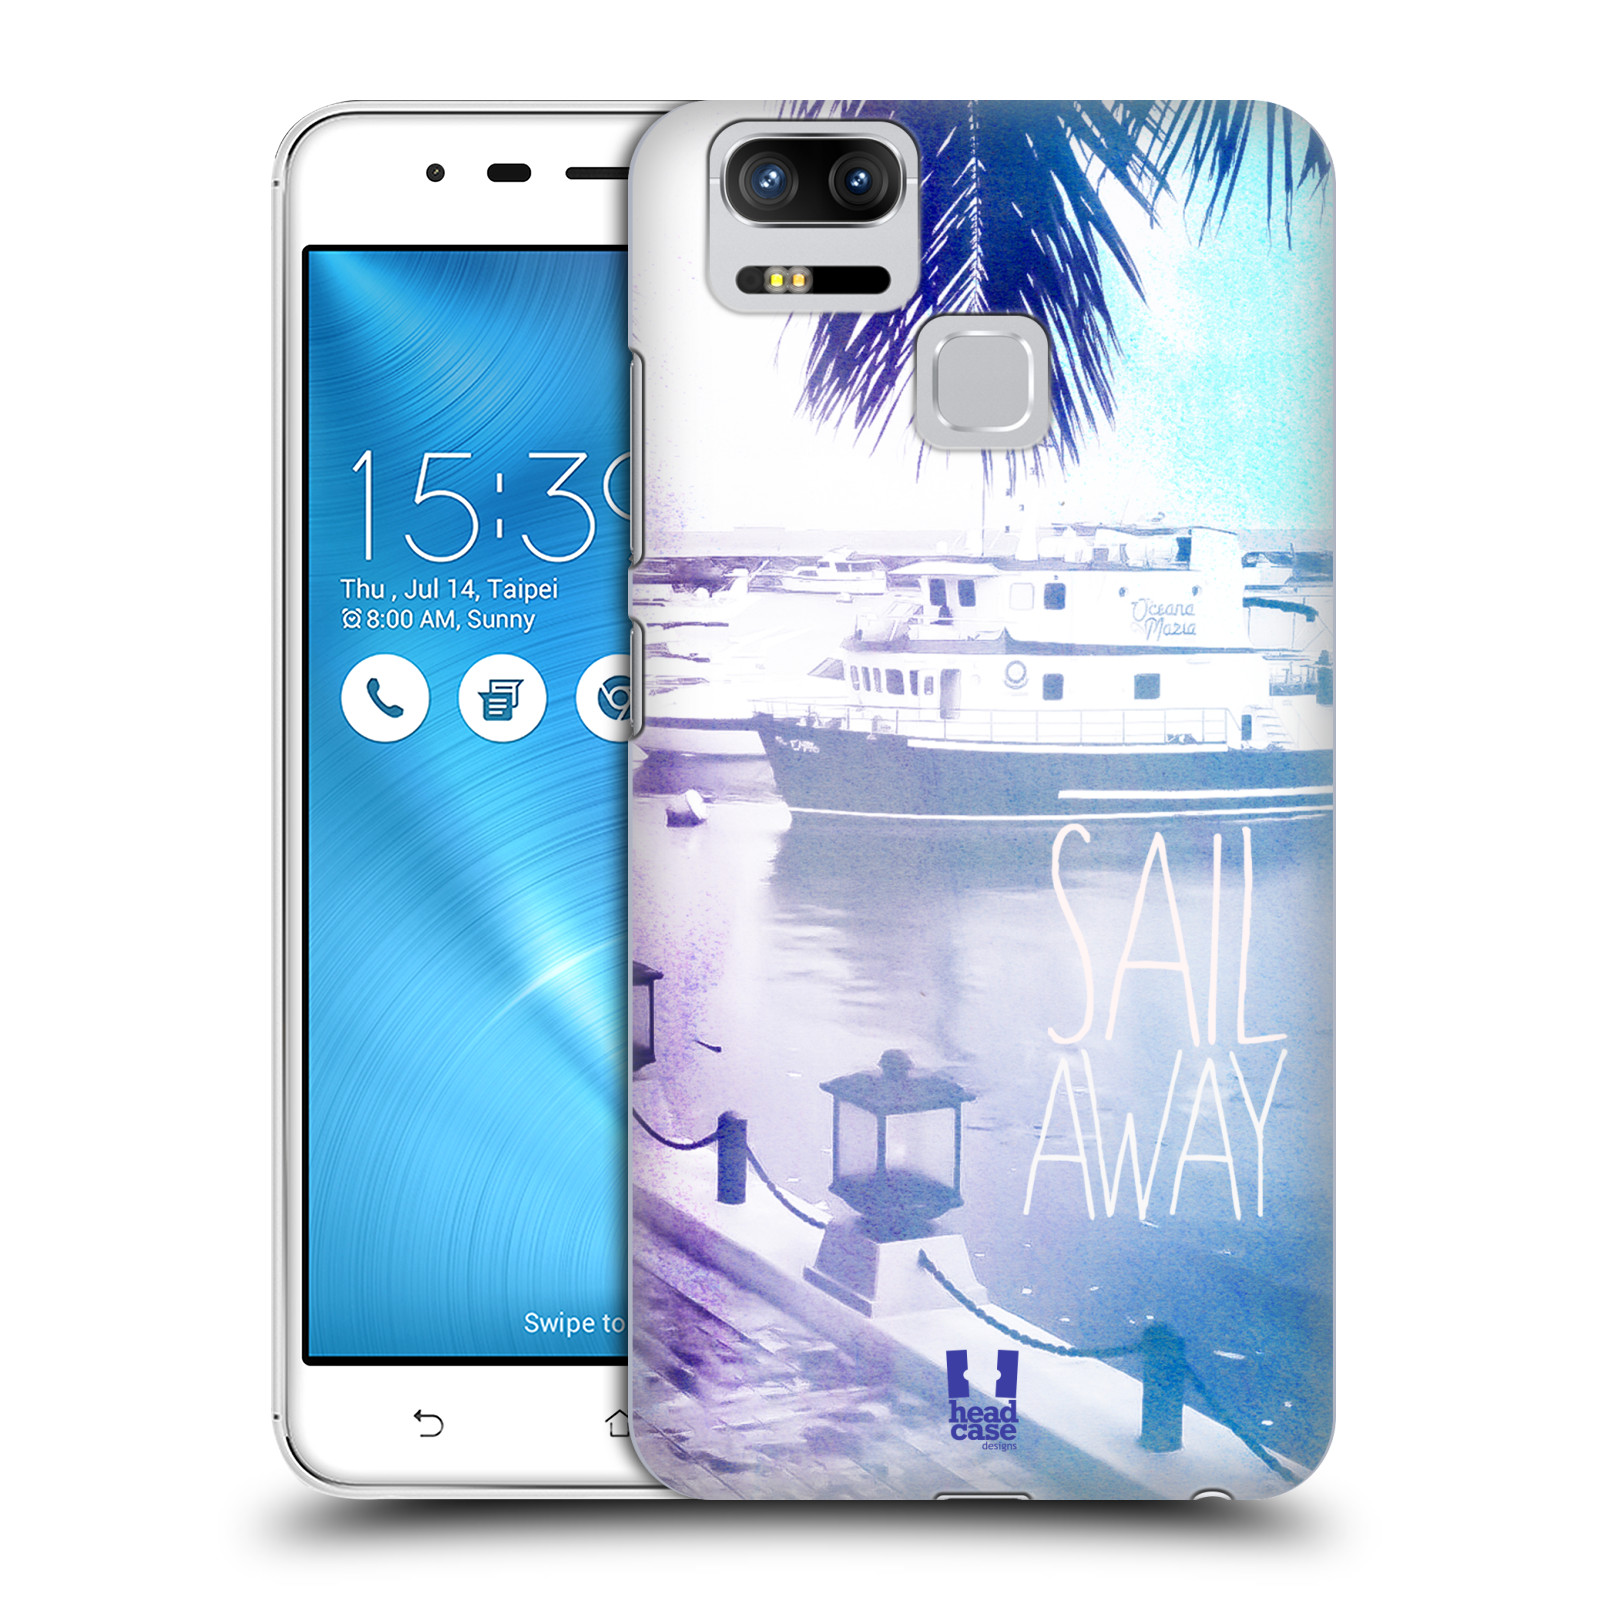 HEAD CASE plastový obal na mobil Asus Zenfone 3 Zoom ZE553KL vzor Pozitivní vlny MODRÁ, přístav s loděmi SAIL AWAY